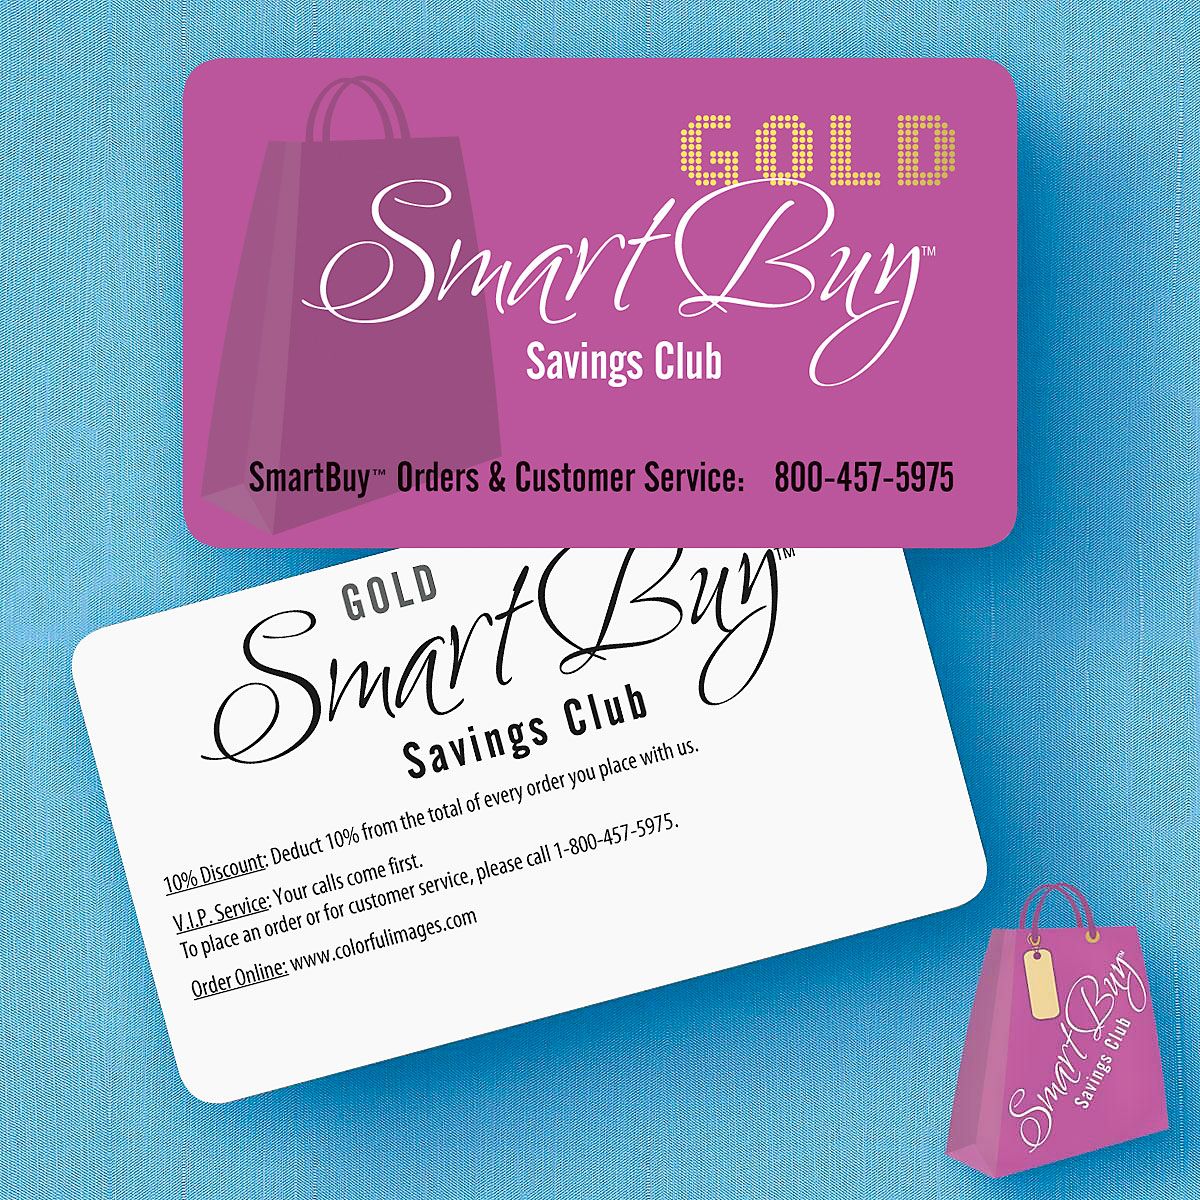 SmartBuy Gold Savings Club